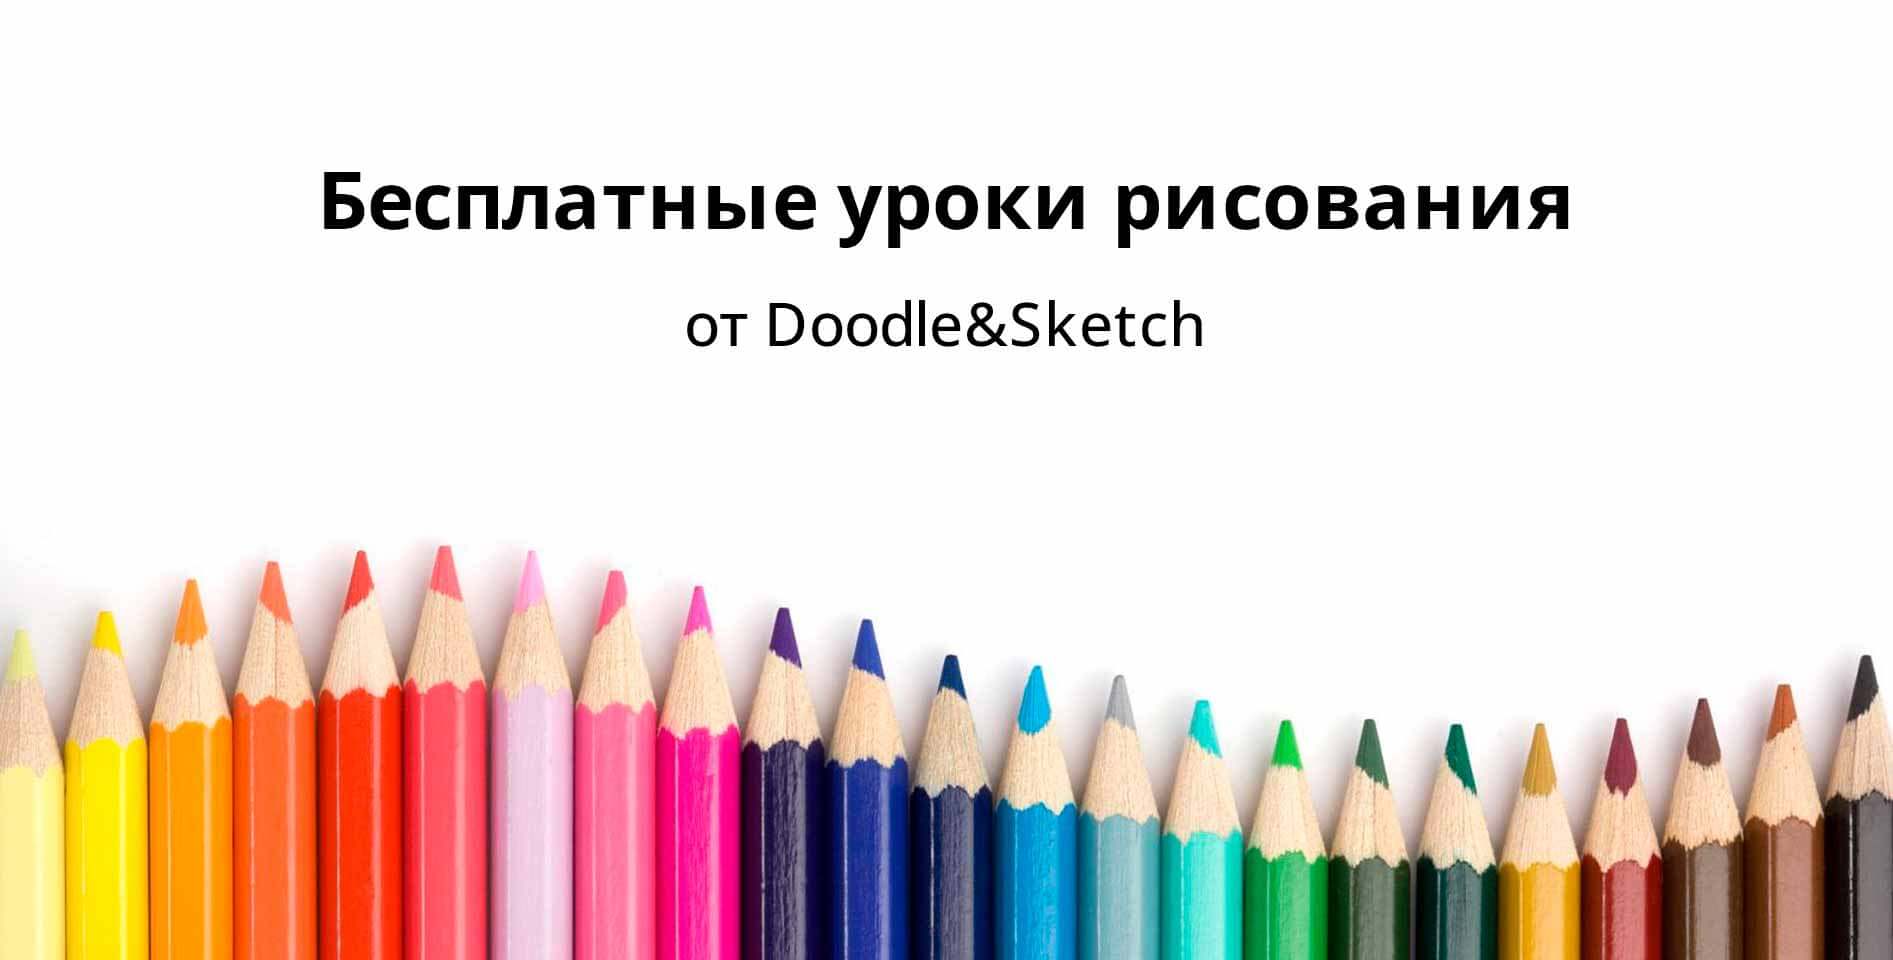 Doodle&Sketch — Бесплатные уроки рисования